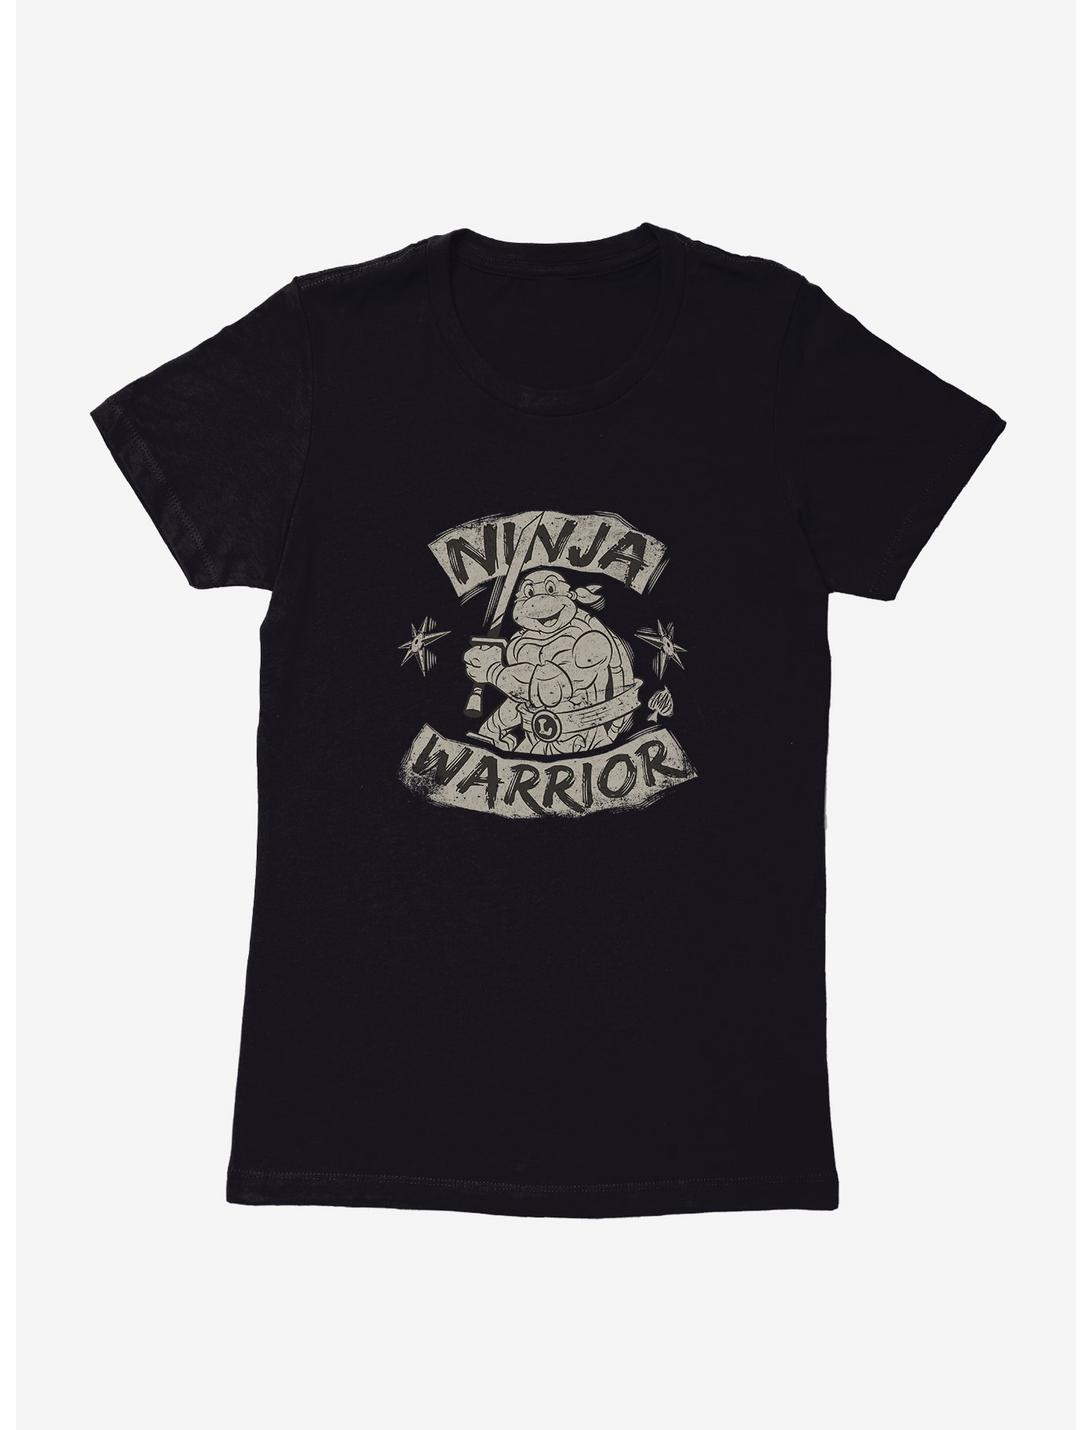 Teenage Mutant Ninja Turtles Leonardo Ninja Warrior Womens T-Shirt, BLACK, hi-res